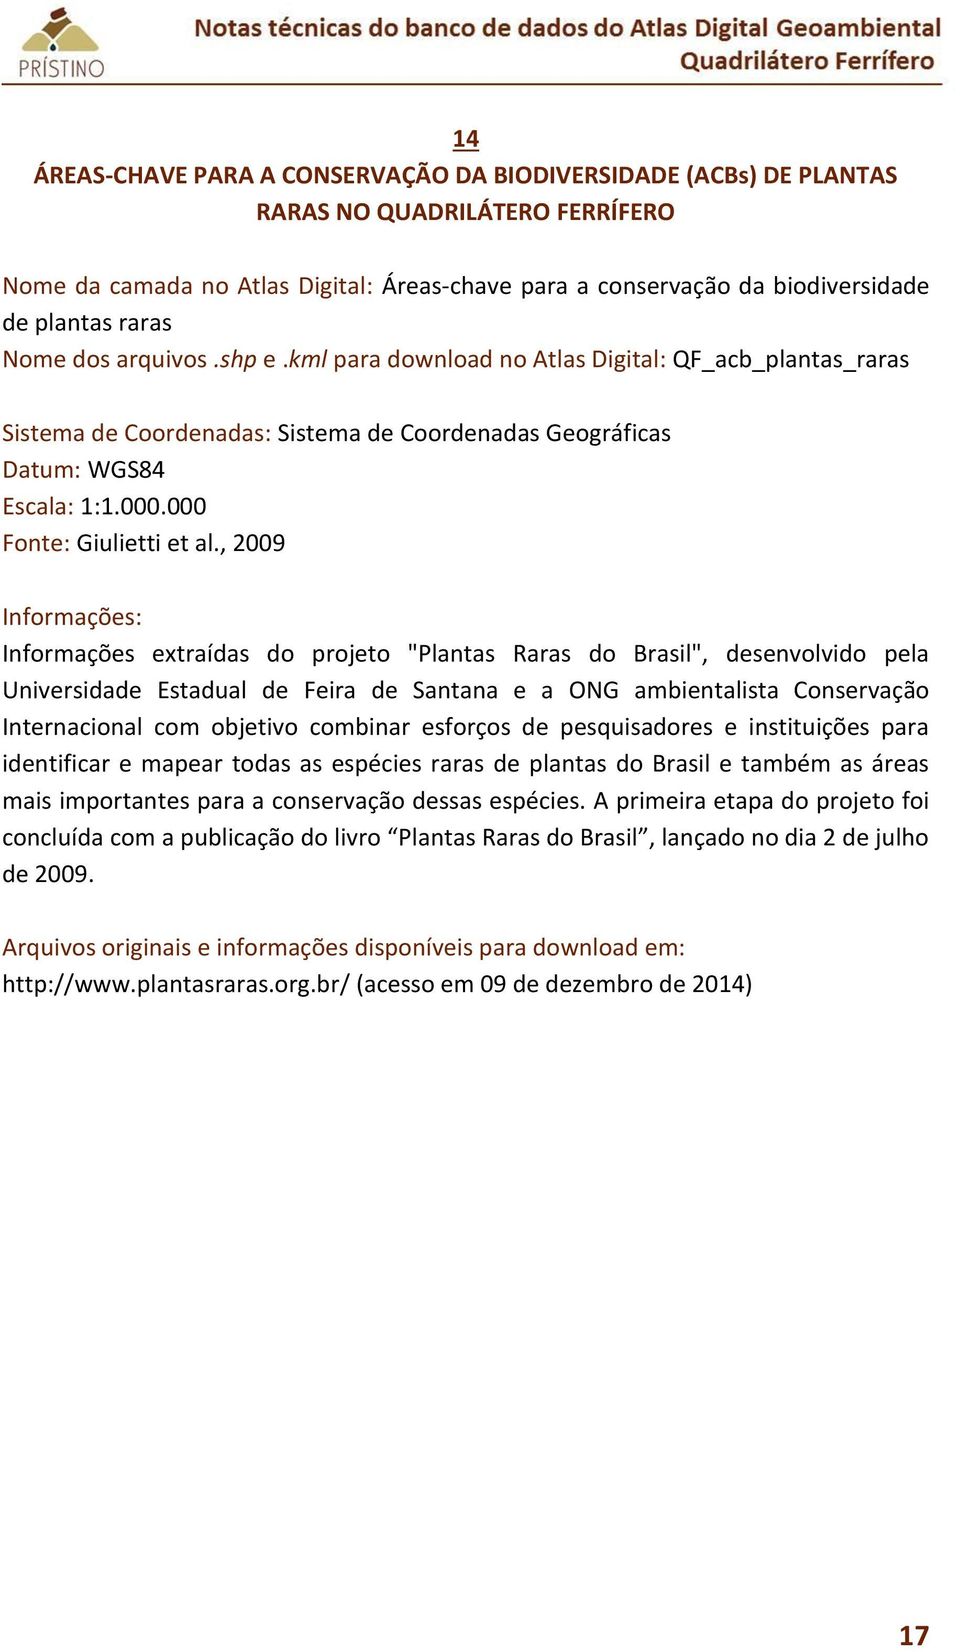 , 2009 Informações extraídas do projeto "Plantas Raras do Brasil", desenvolvido pela Universidade Estadual de Feira de Santana e a ONG ambientalista Conservação Internacional com objetivo combinar